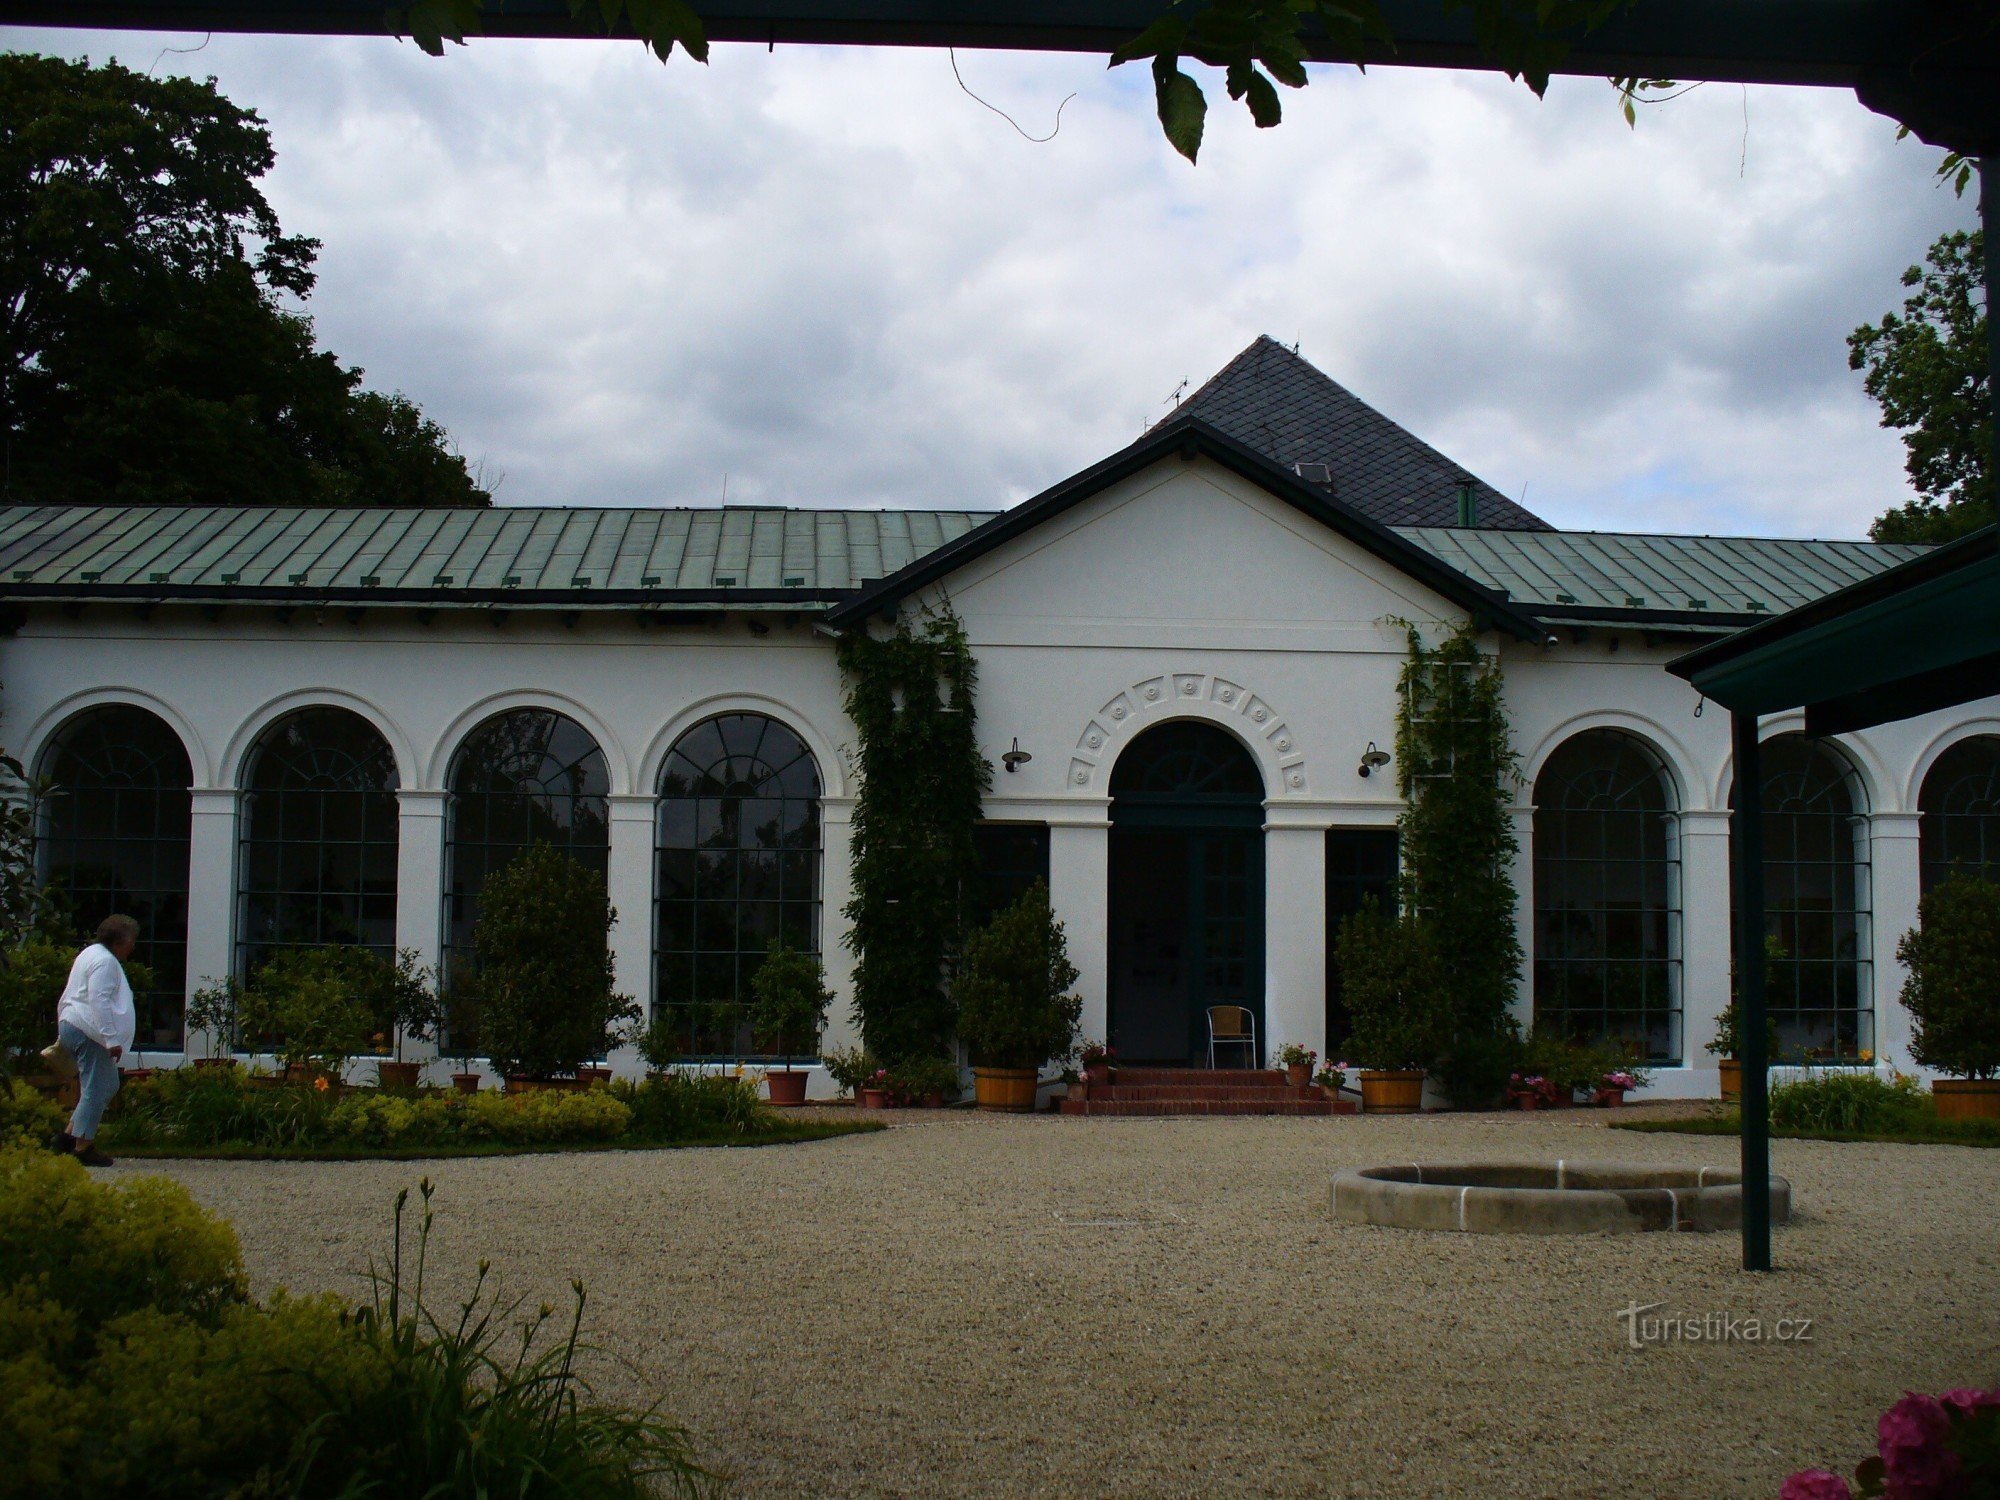 Edificio dell'Orangerie